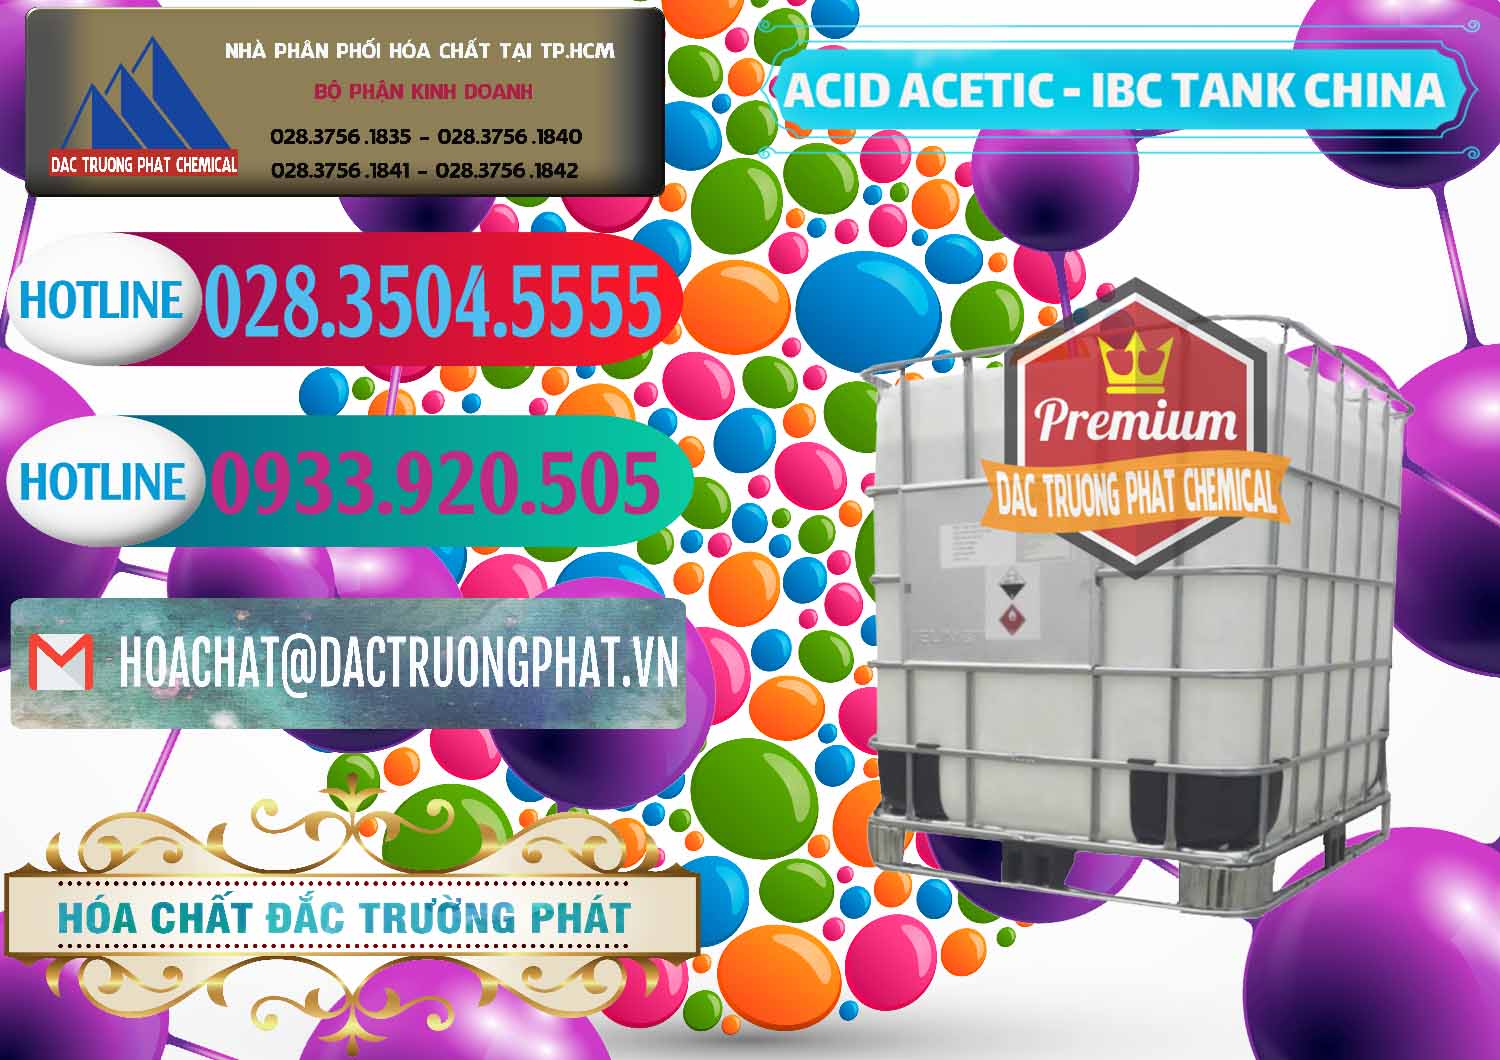 Công ty chuyên cung cấp và bán Acetic Acid – Axit Acetic Tank Bồn IBC Trung Quốc China - 0443 - Cty cung ứng và phân phối hóa chất tại TP.HCM - truongphat.vn